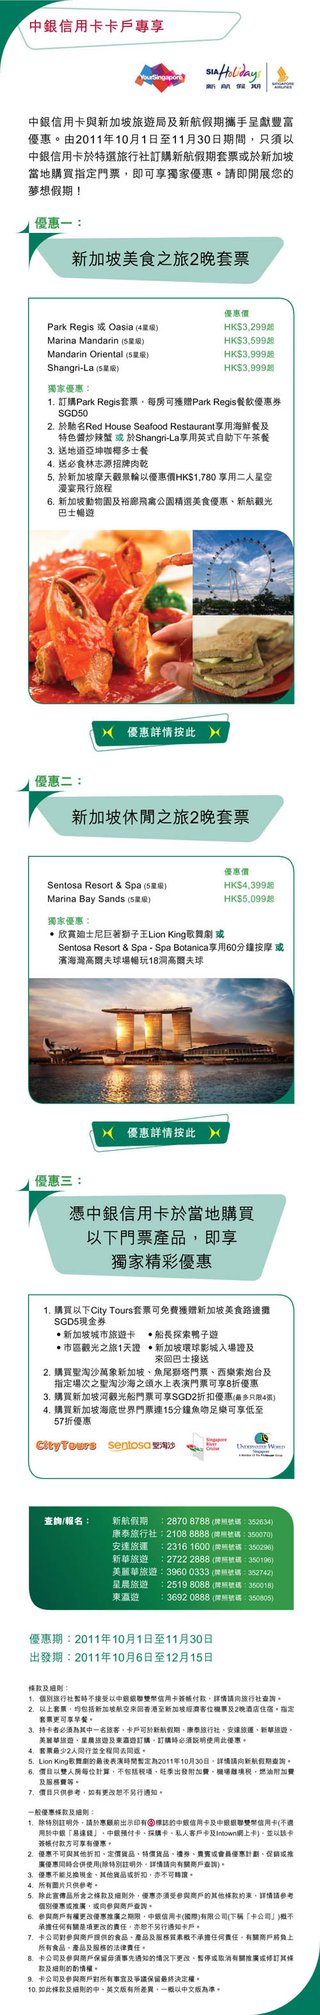 中銀信用卡卡戶享專享新加坡獨家套票優惠